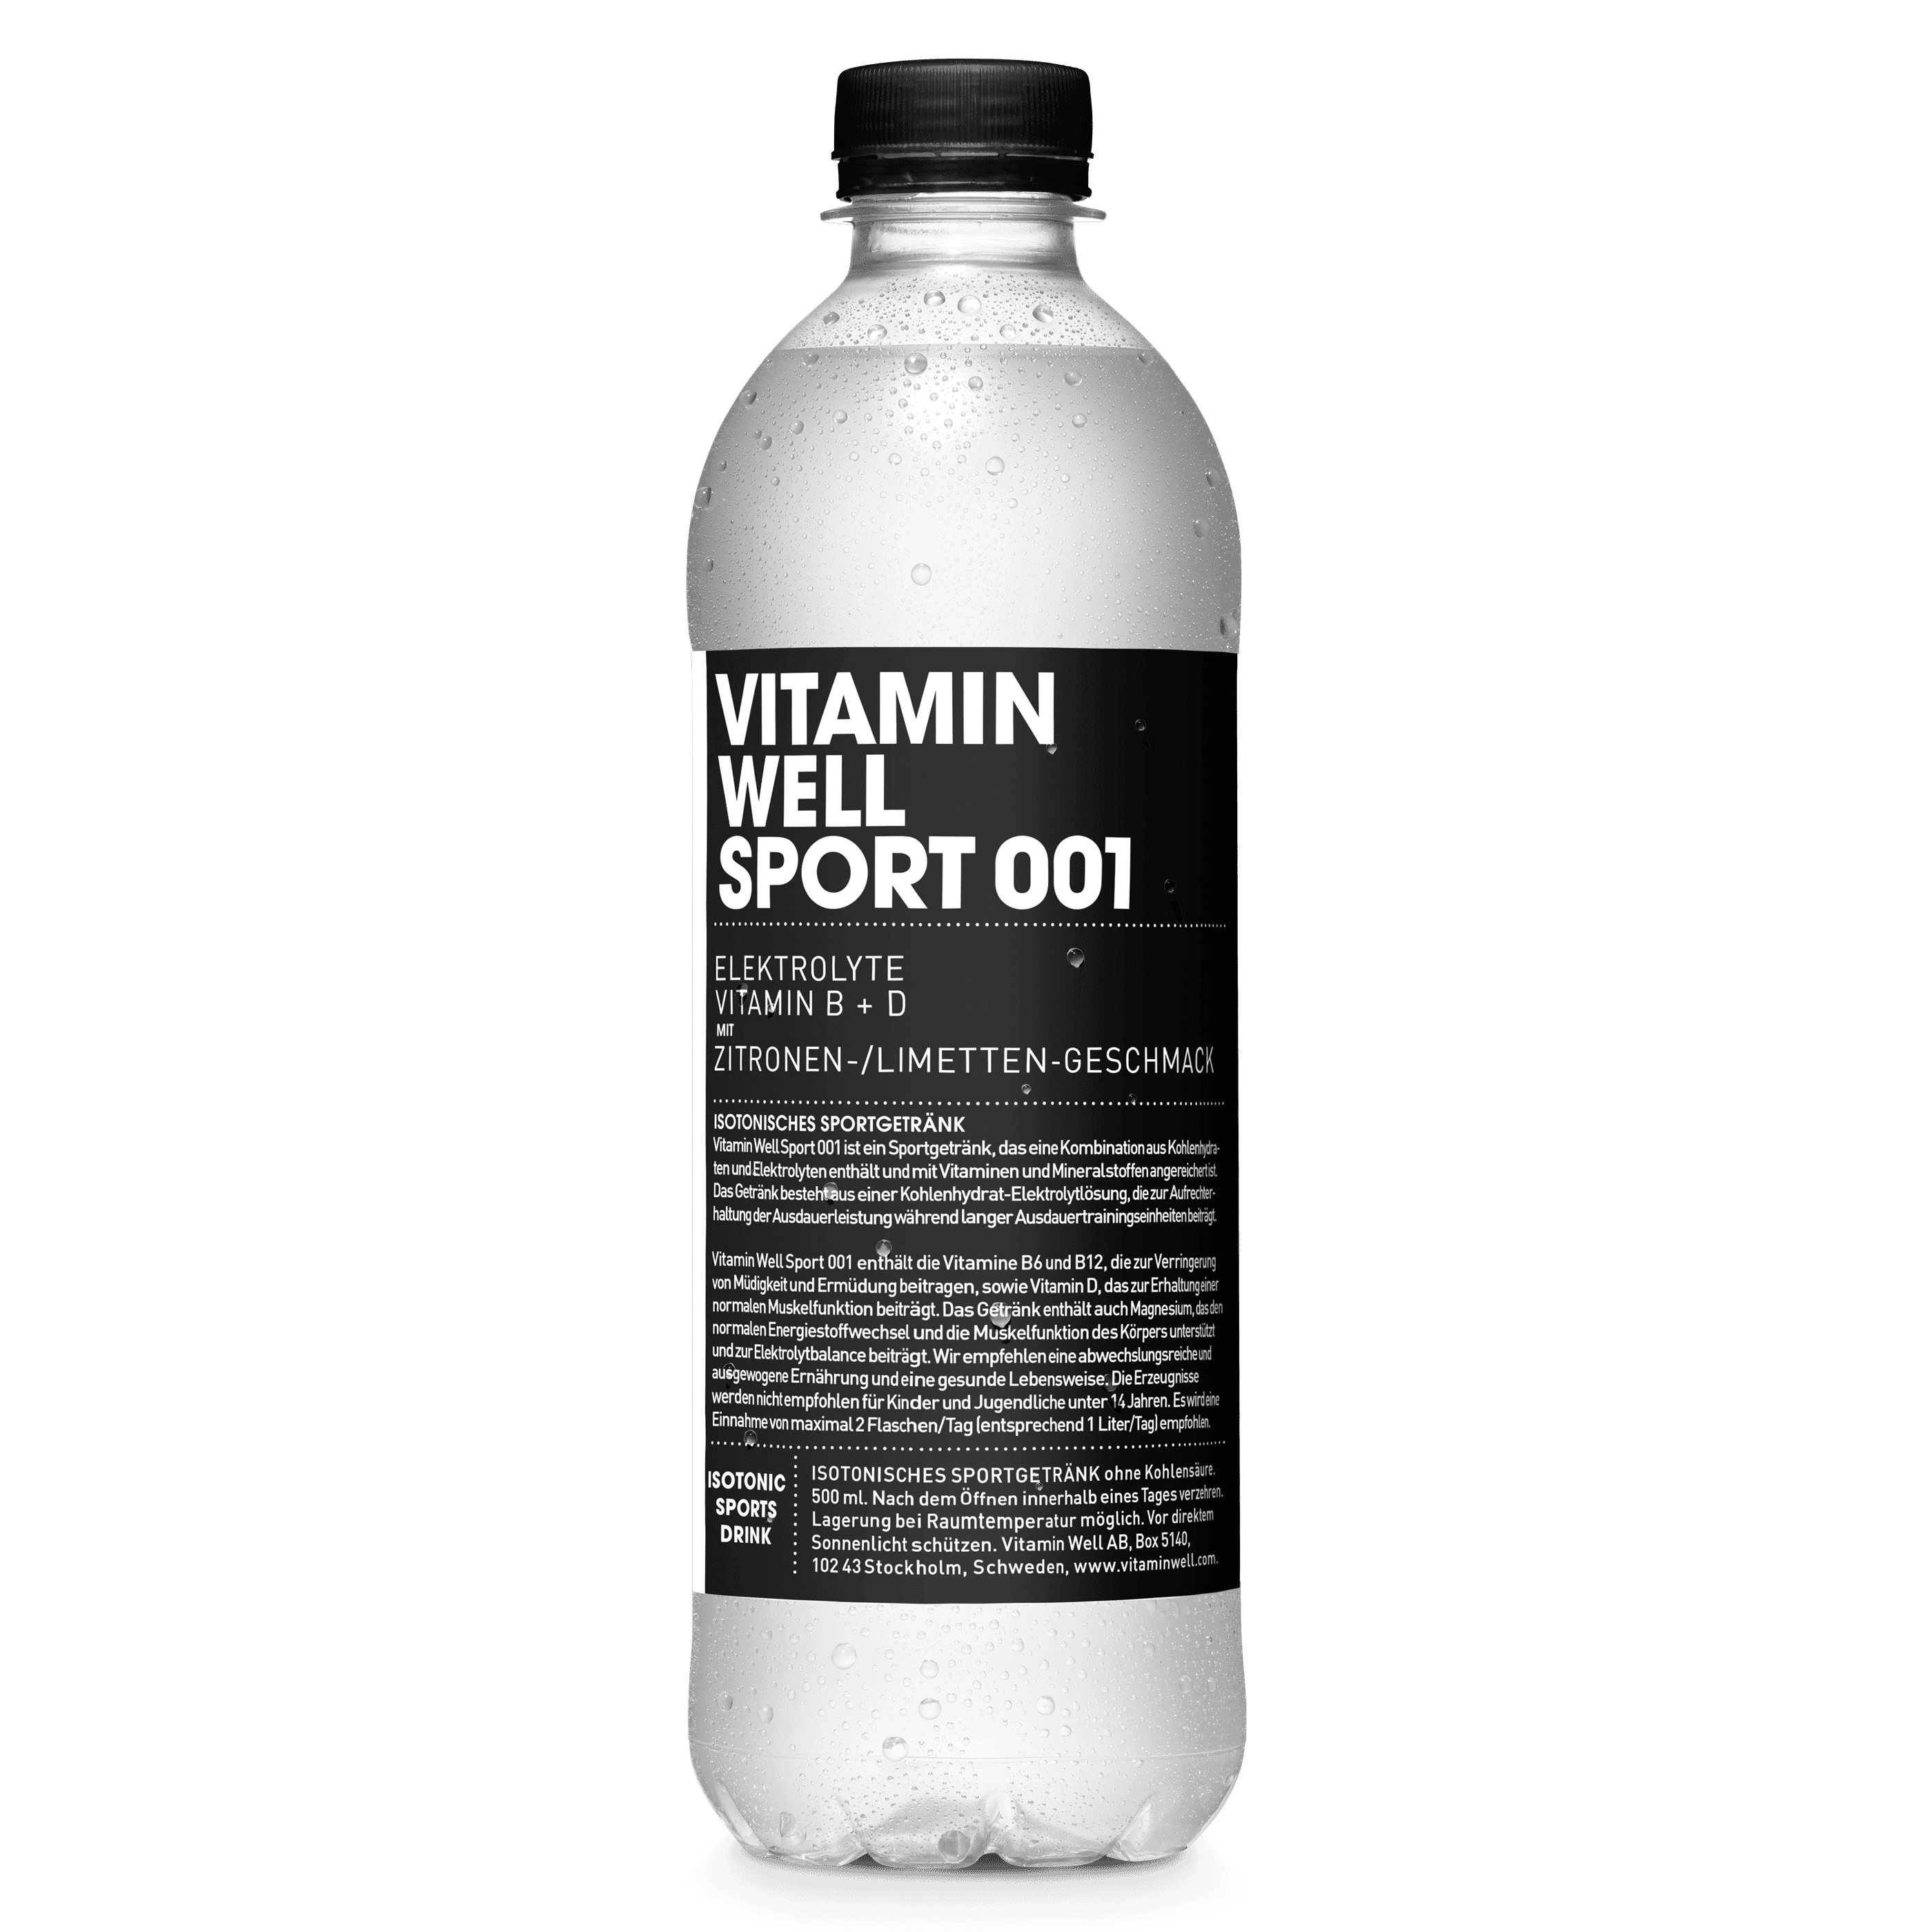 Vitamin Well sport 001 packshot single bottle